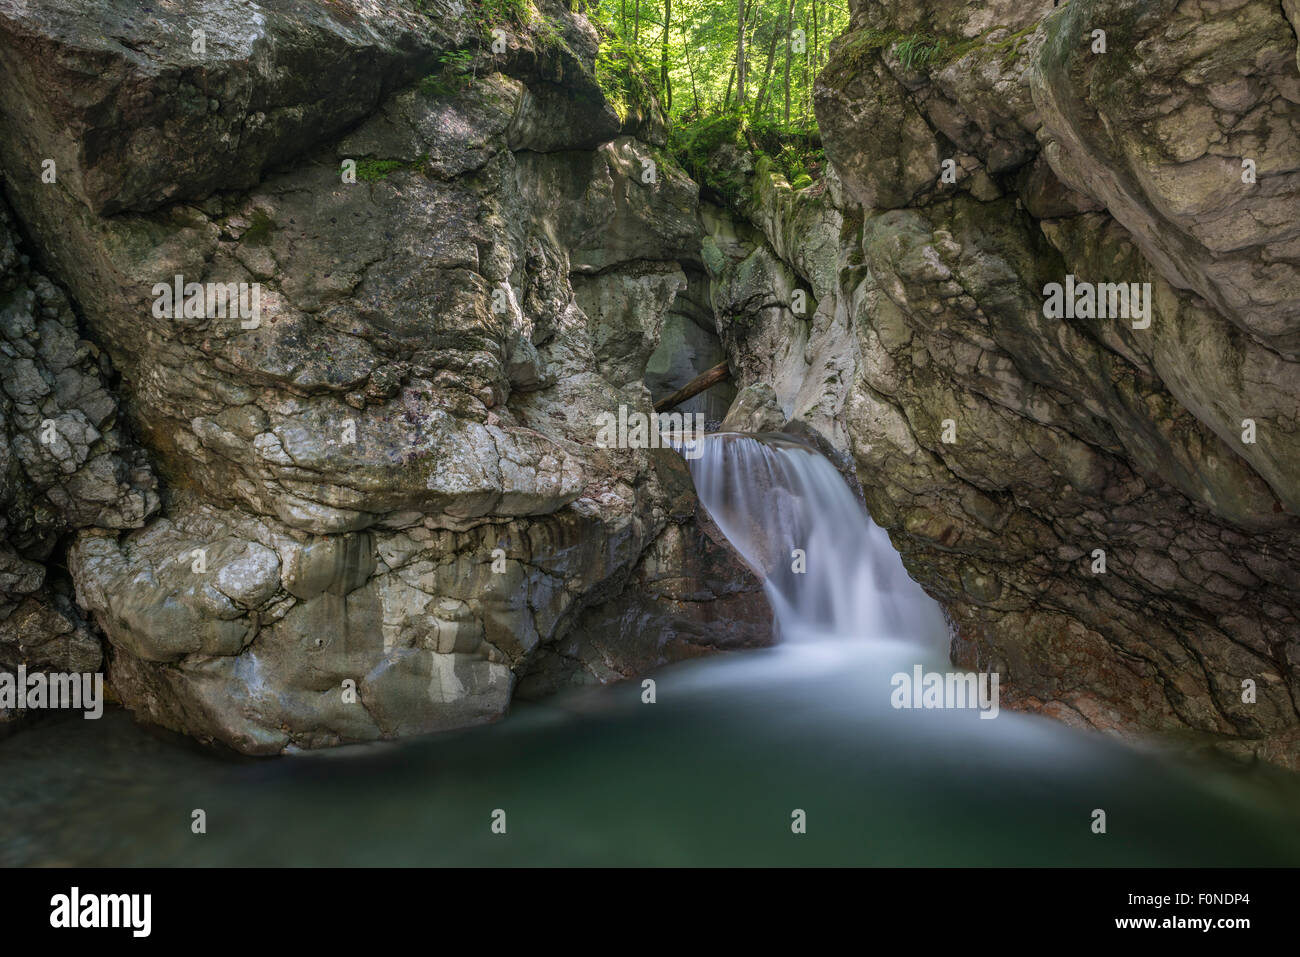 Wasserfall In Taugler Strubklamm Taugl Bezirk Hallein Salzburg Osterreich Stockfotografie Alamy